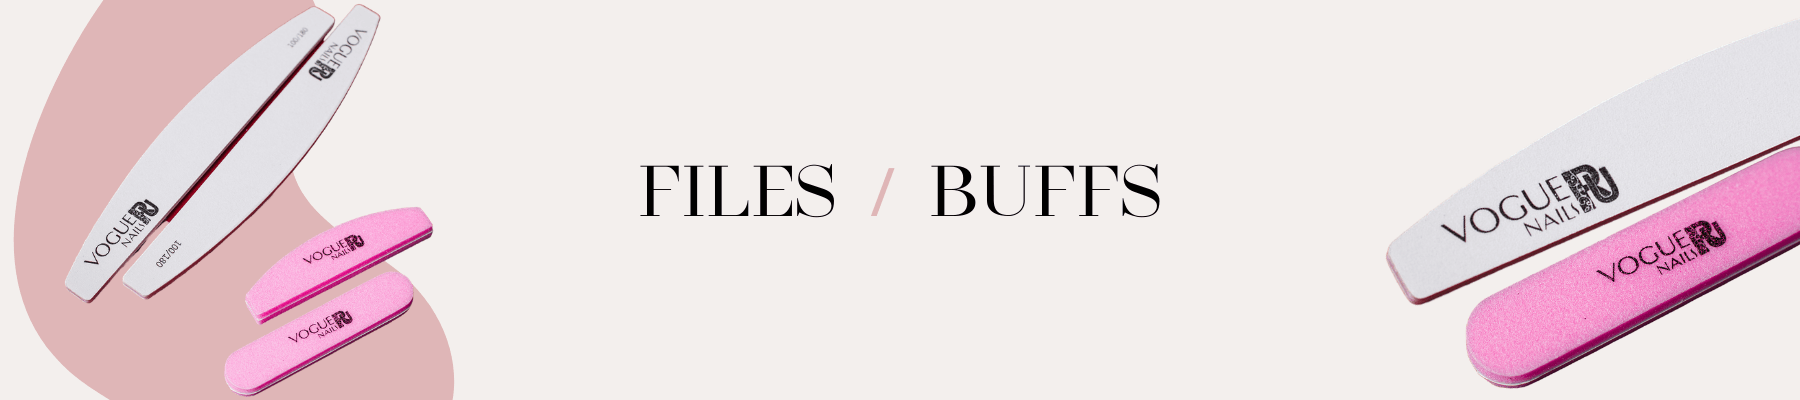 Files / Buffs